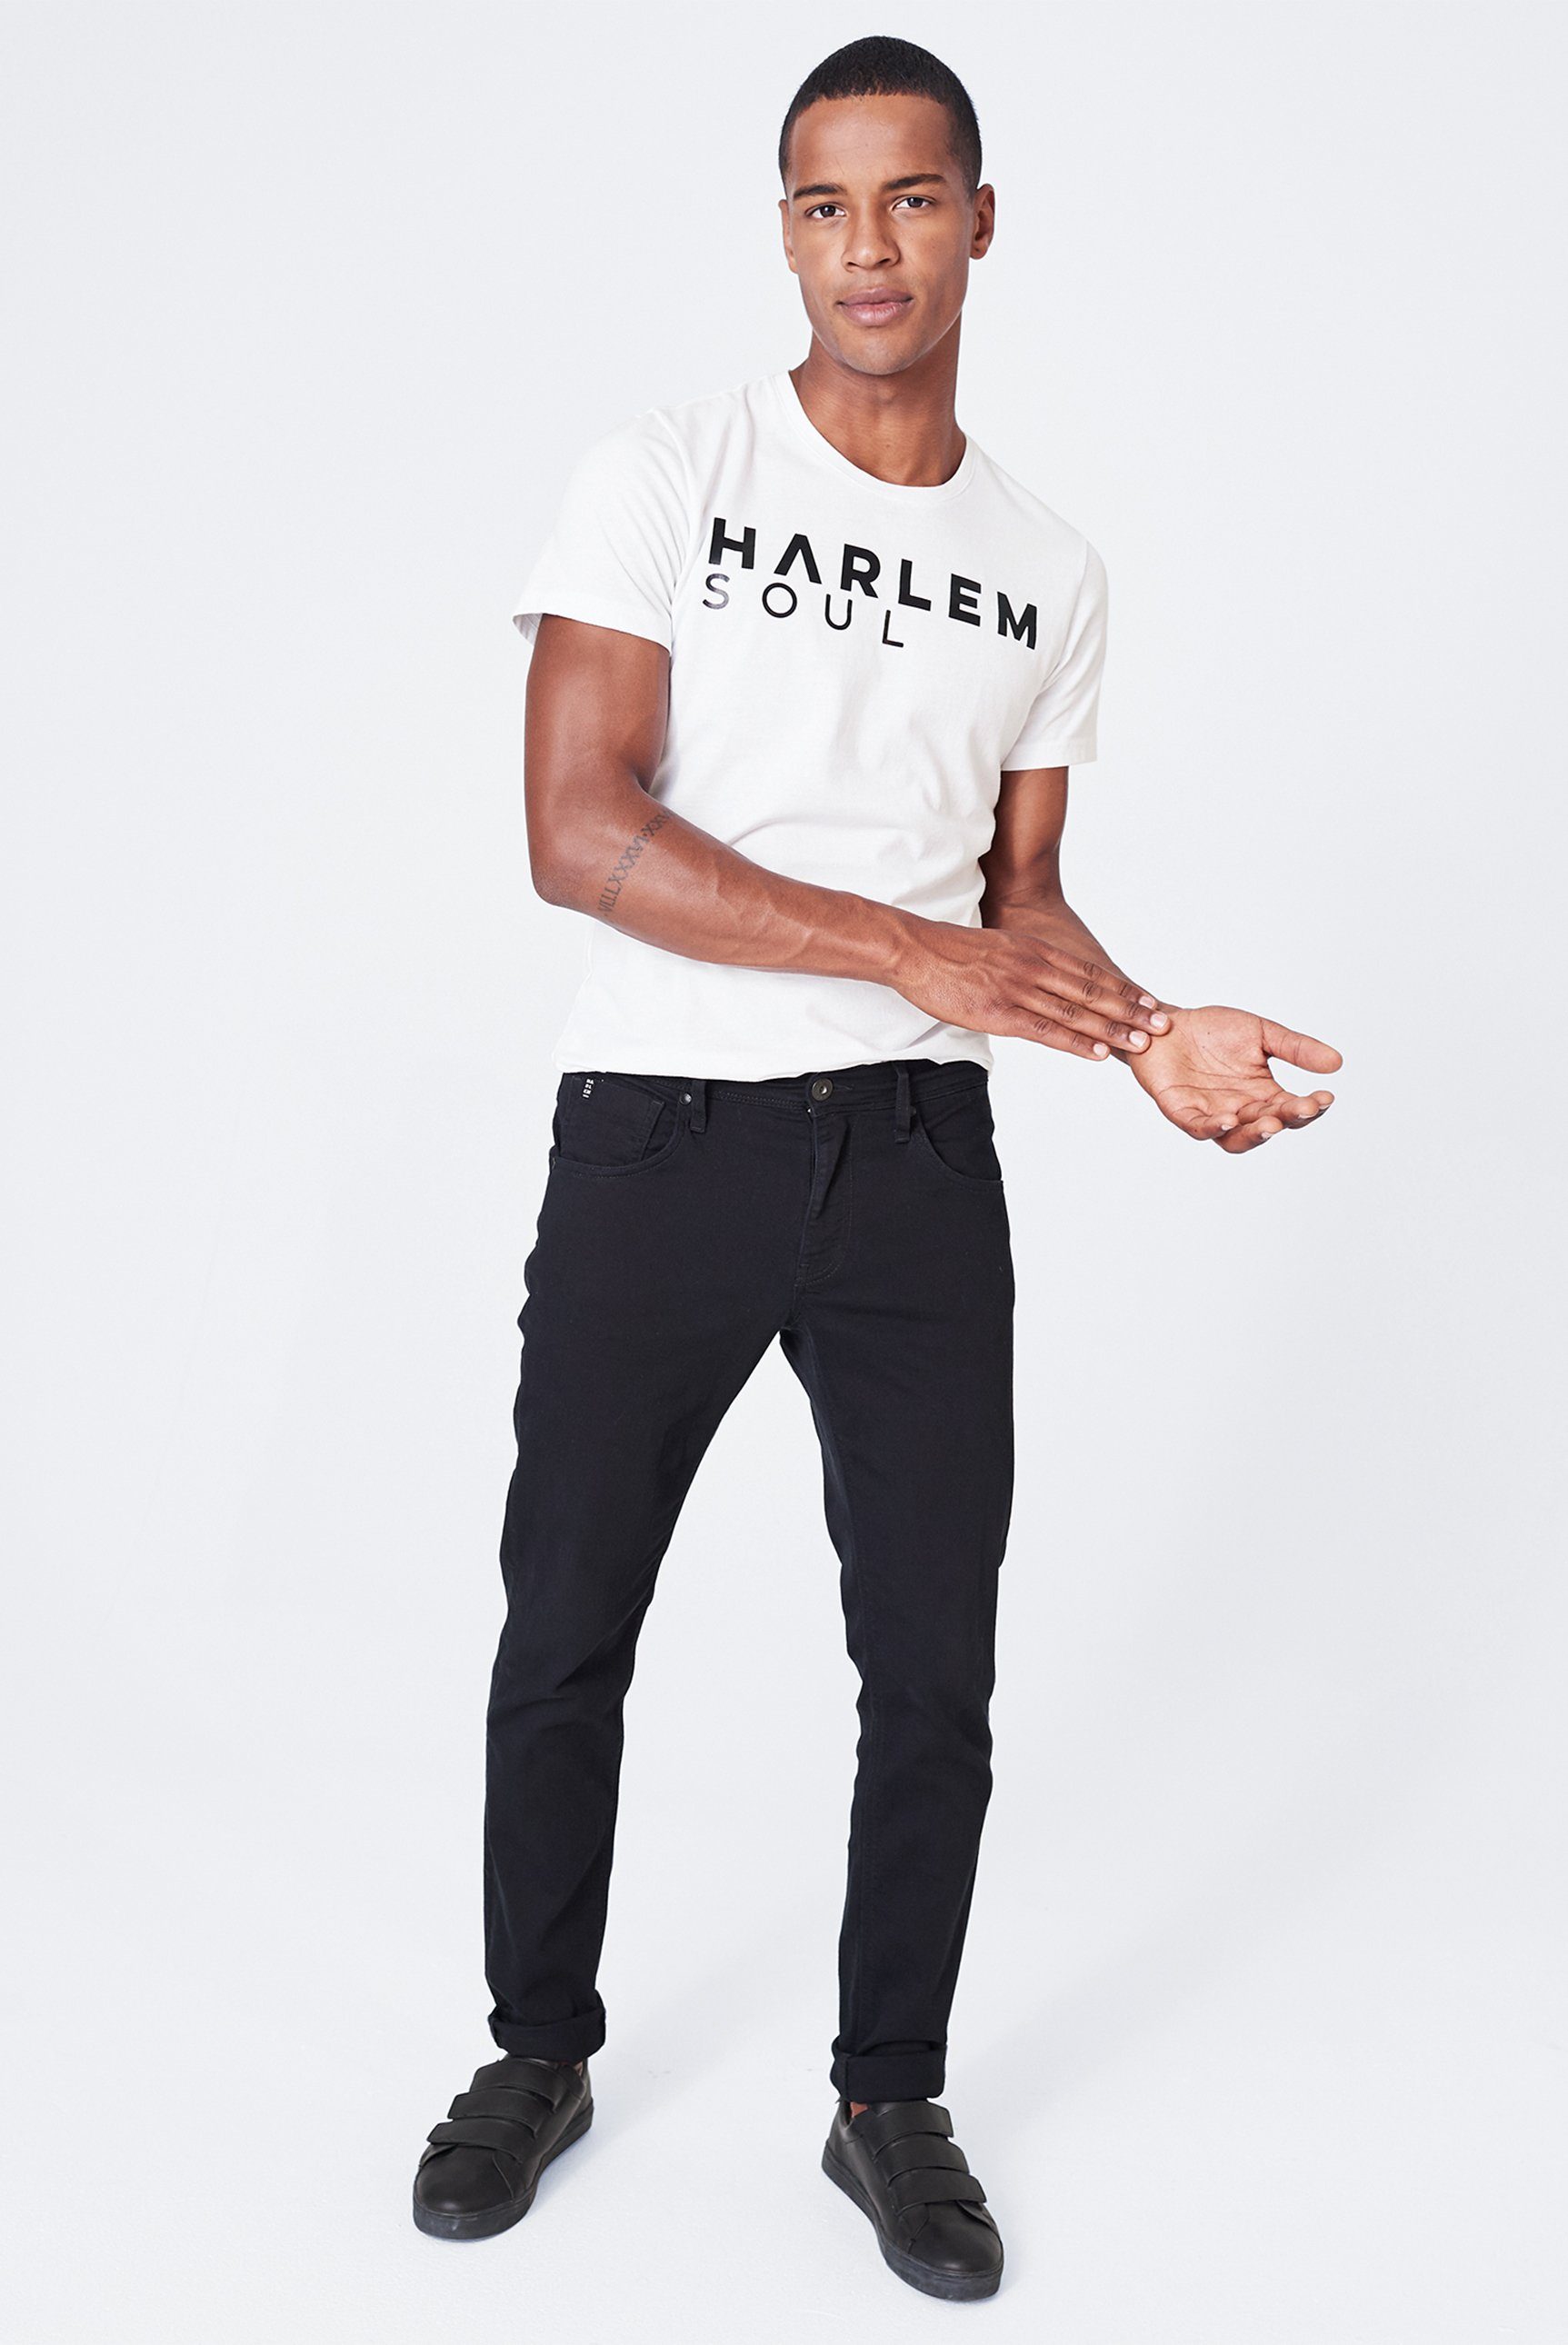 Empfohlen Harlem Soul Slim-fit-Jeans mit Stretch-Anteil CLE-VE